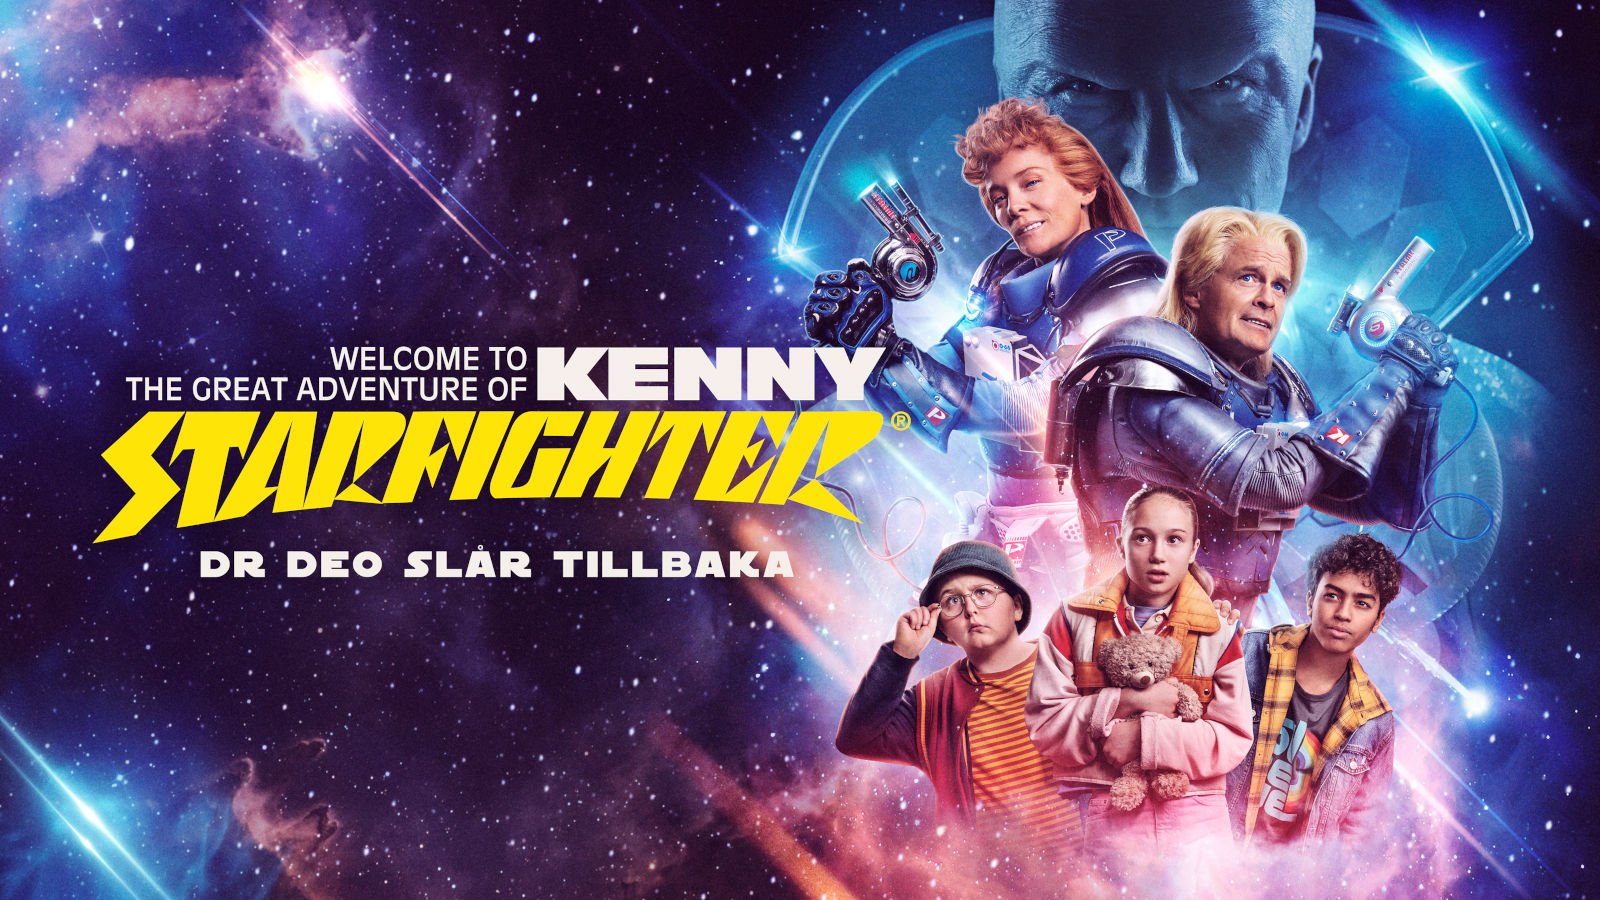 Kenny Starfighter – Dr Deo slår tillbaka (säsong 1)